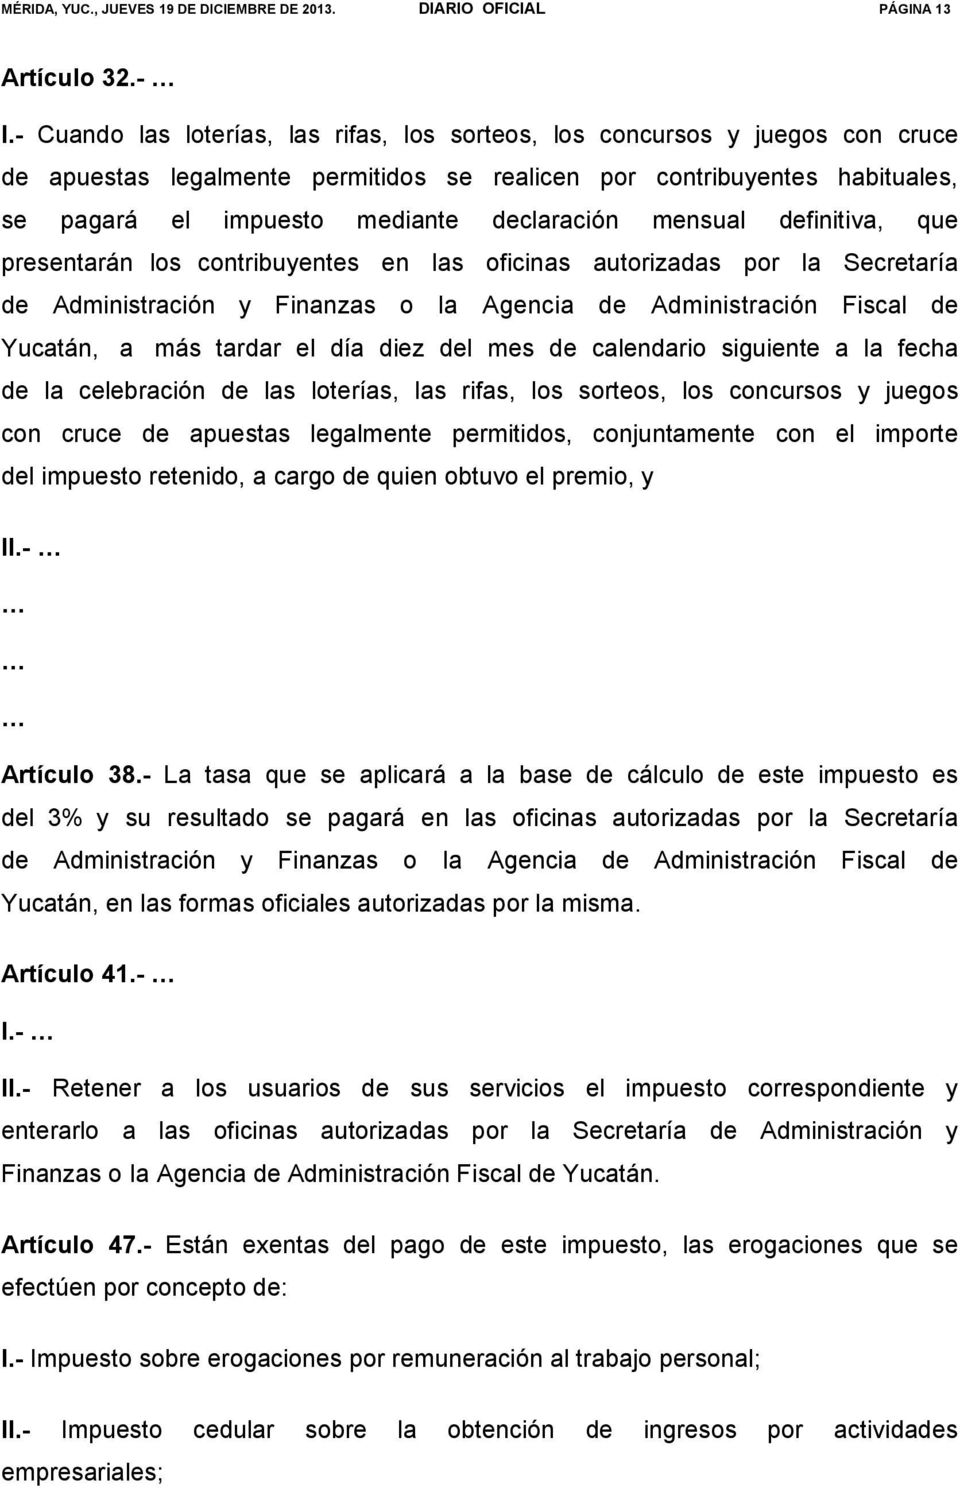 mensual definitiva, que presentarán los contribuyentes en las oficinas autorizadas por la Secretaría de Administración y Finanzas o la Agencia de Administración Fiscal de Yucatán, a más tardar el día